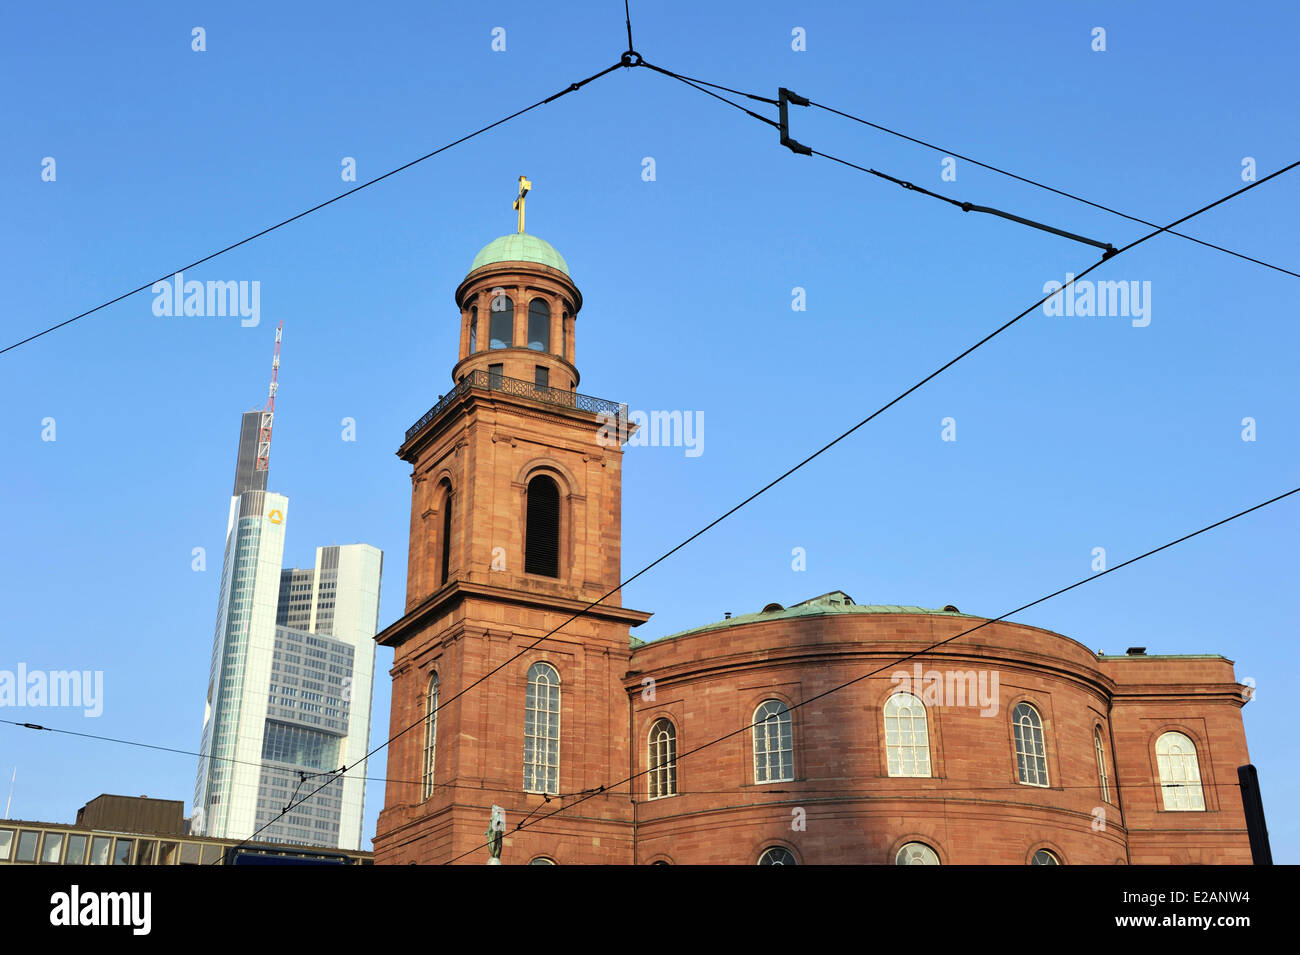 Allemagne, Hesse, Frankfurt am Main, tour de la Commerzbank et de la Paulskirche Banque D'Images